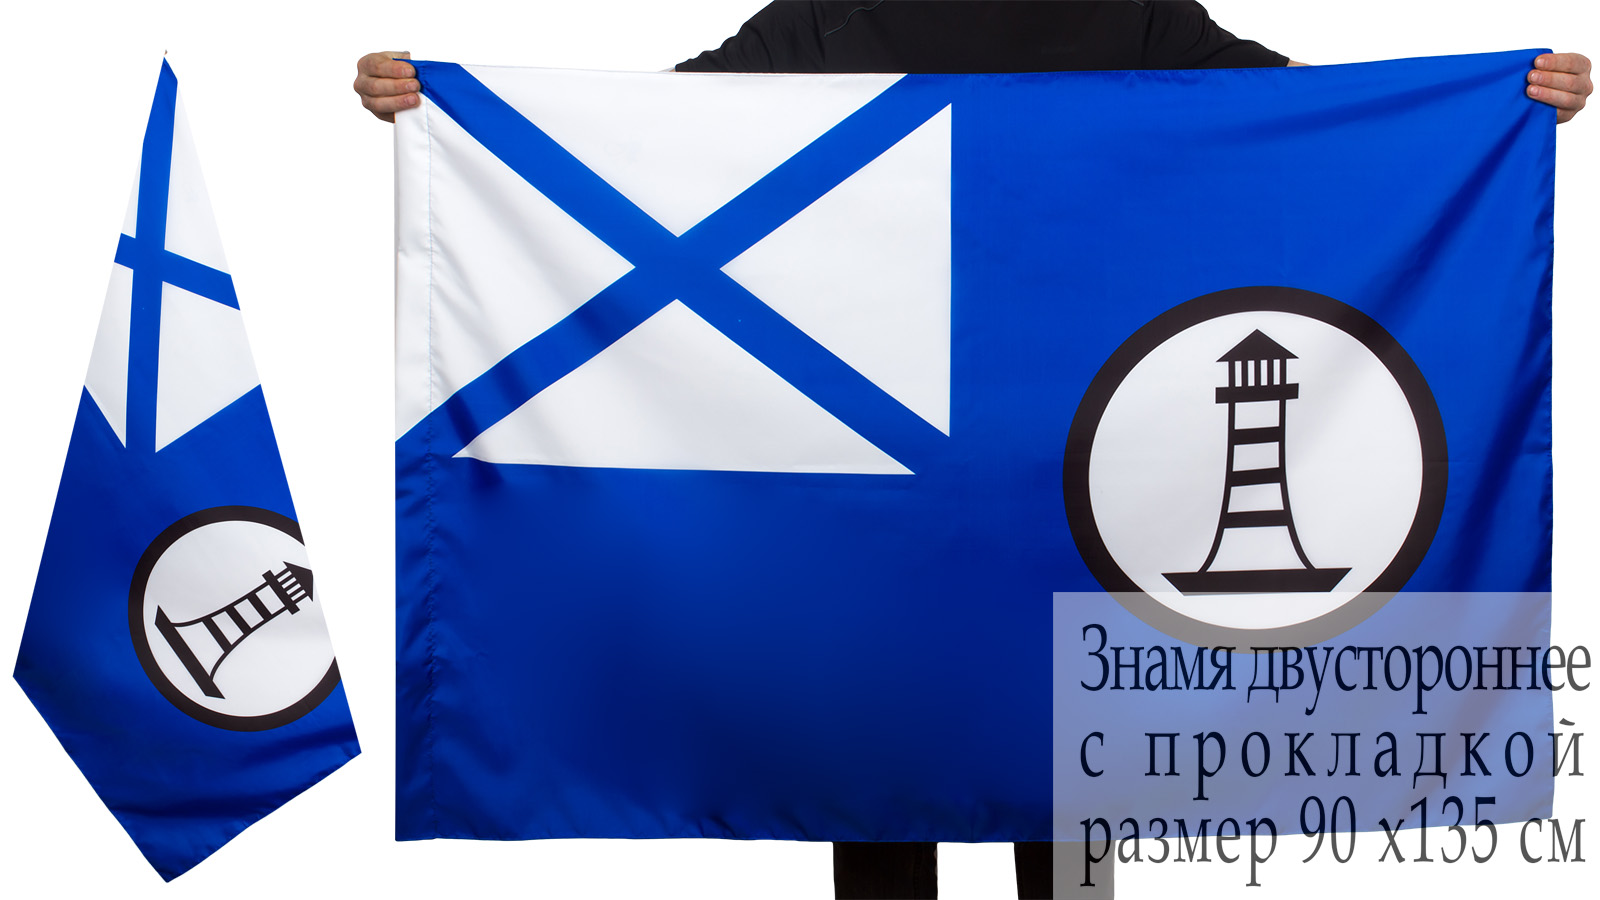 Двусторонний флаг гидрографических судов ВМФ